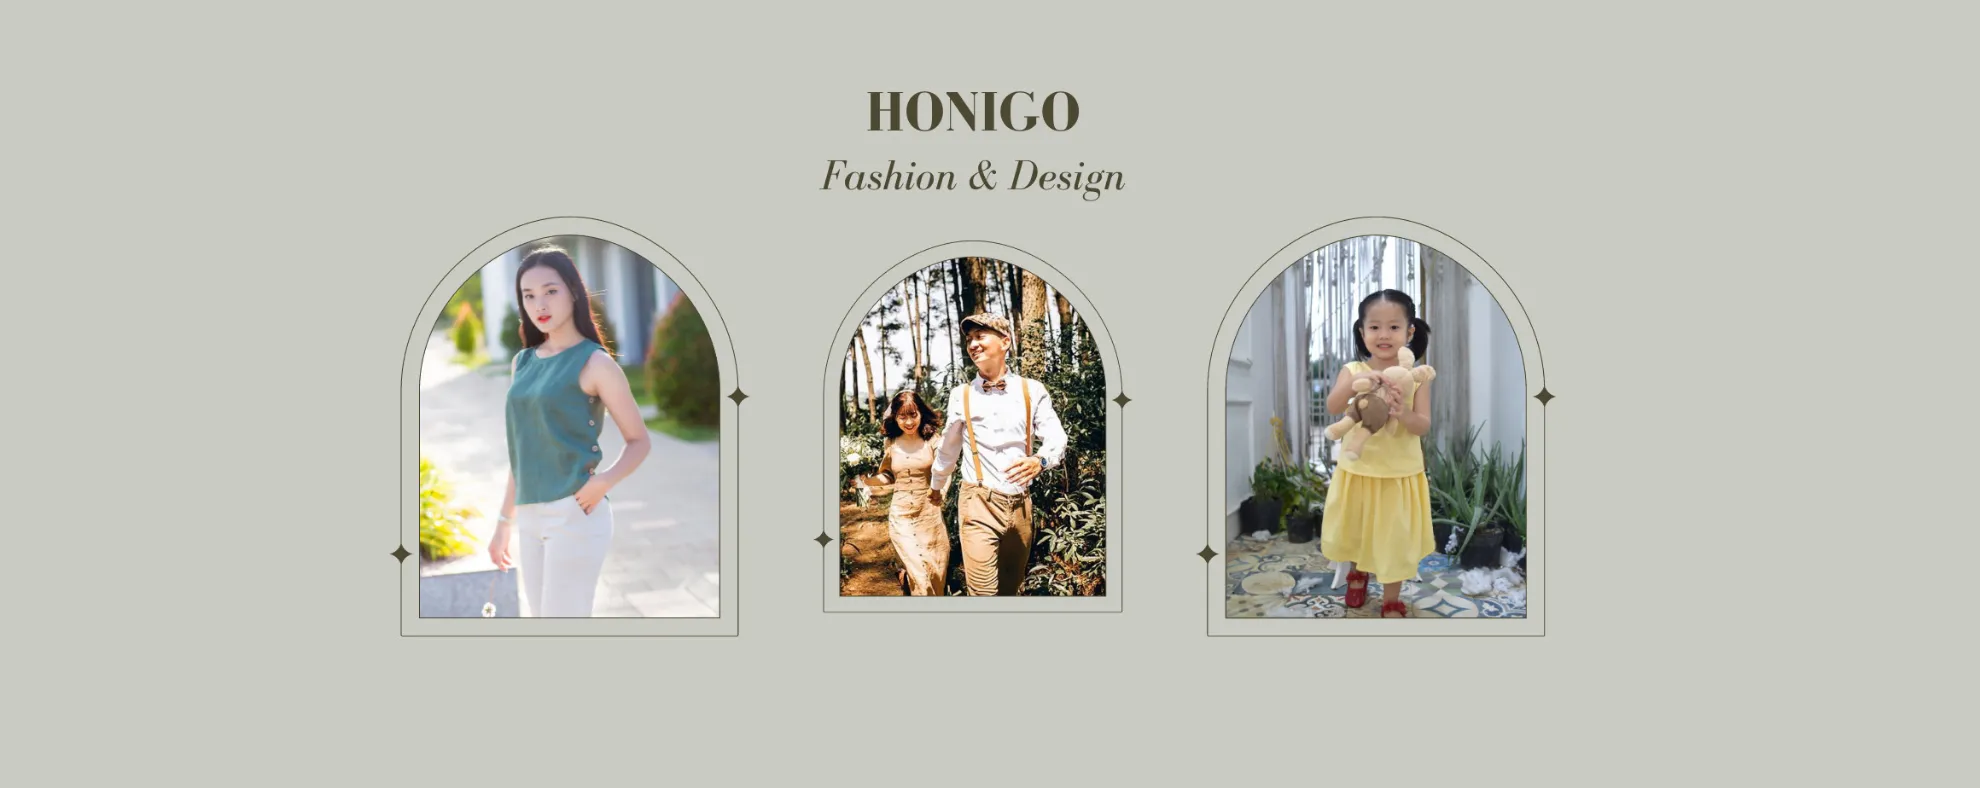 Honigo Fashion